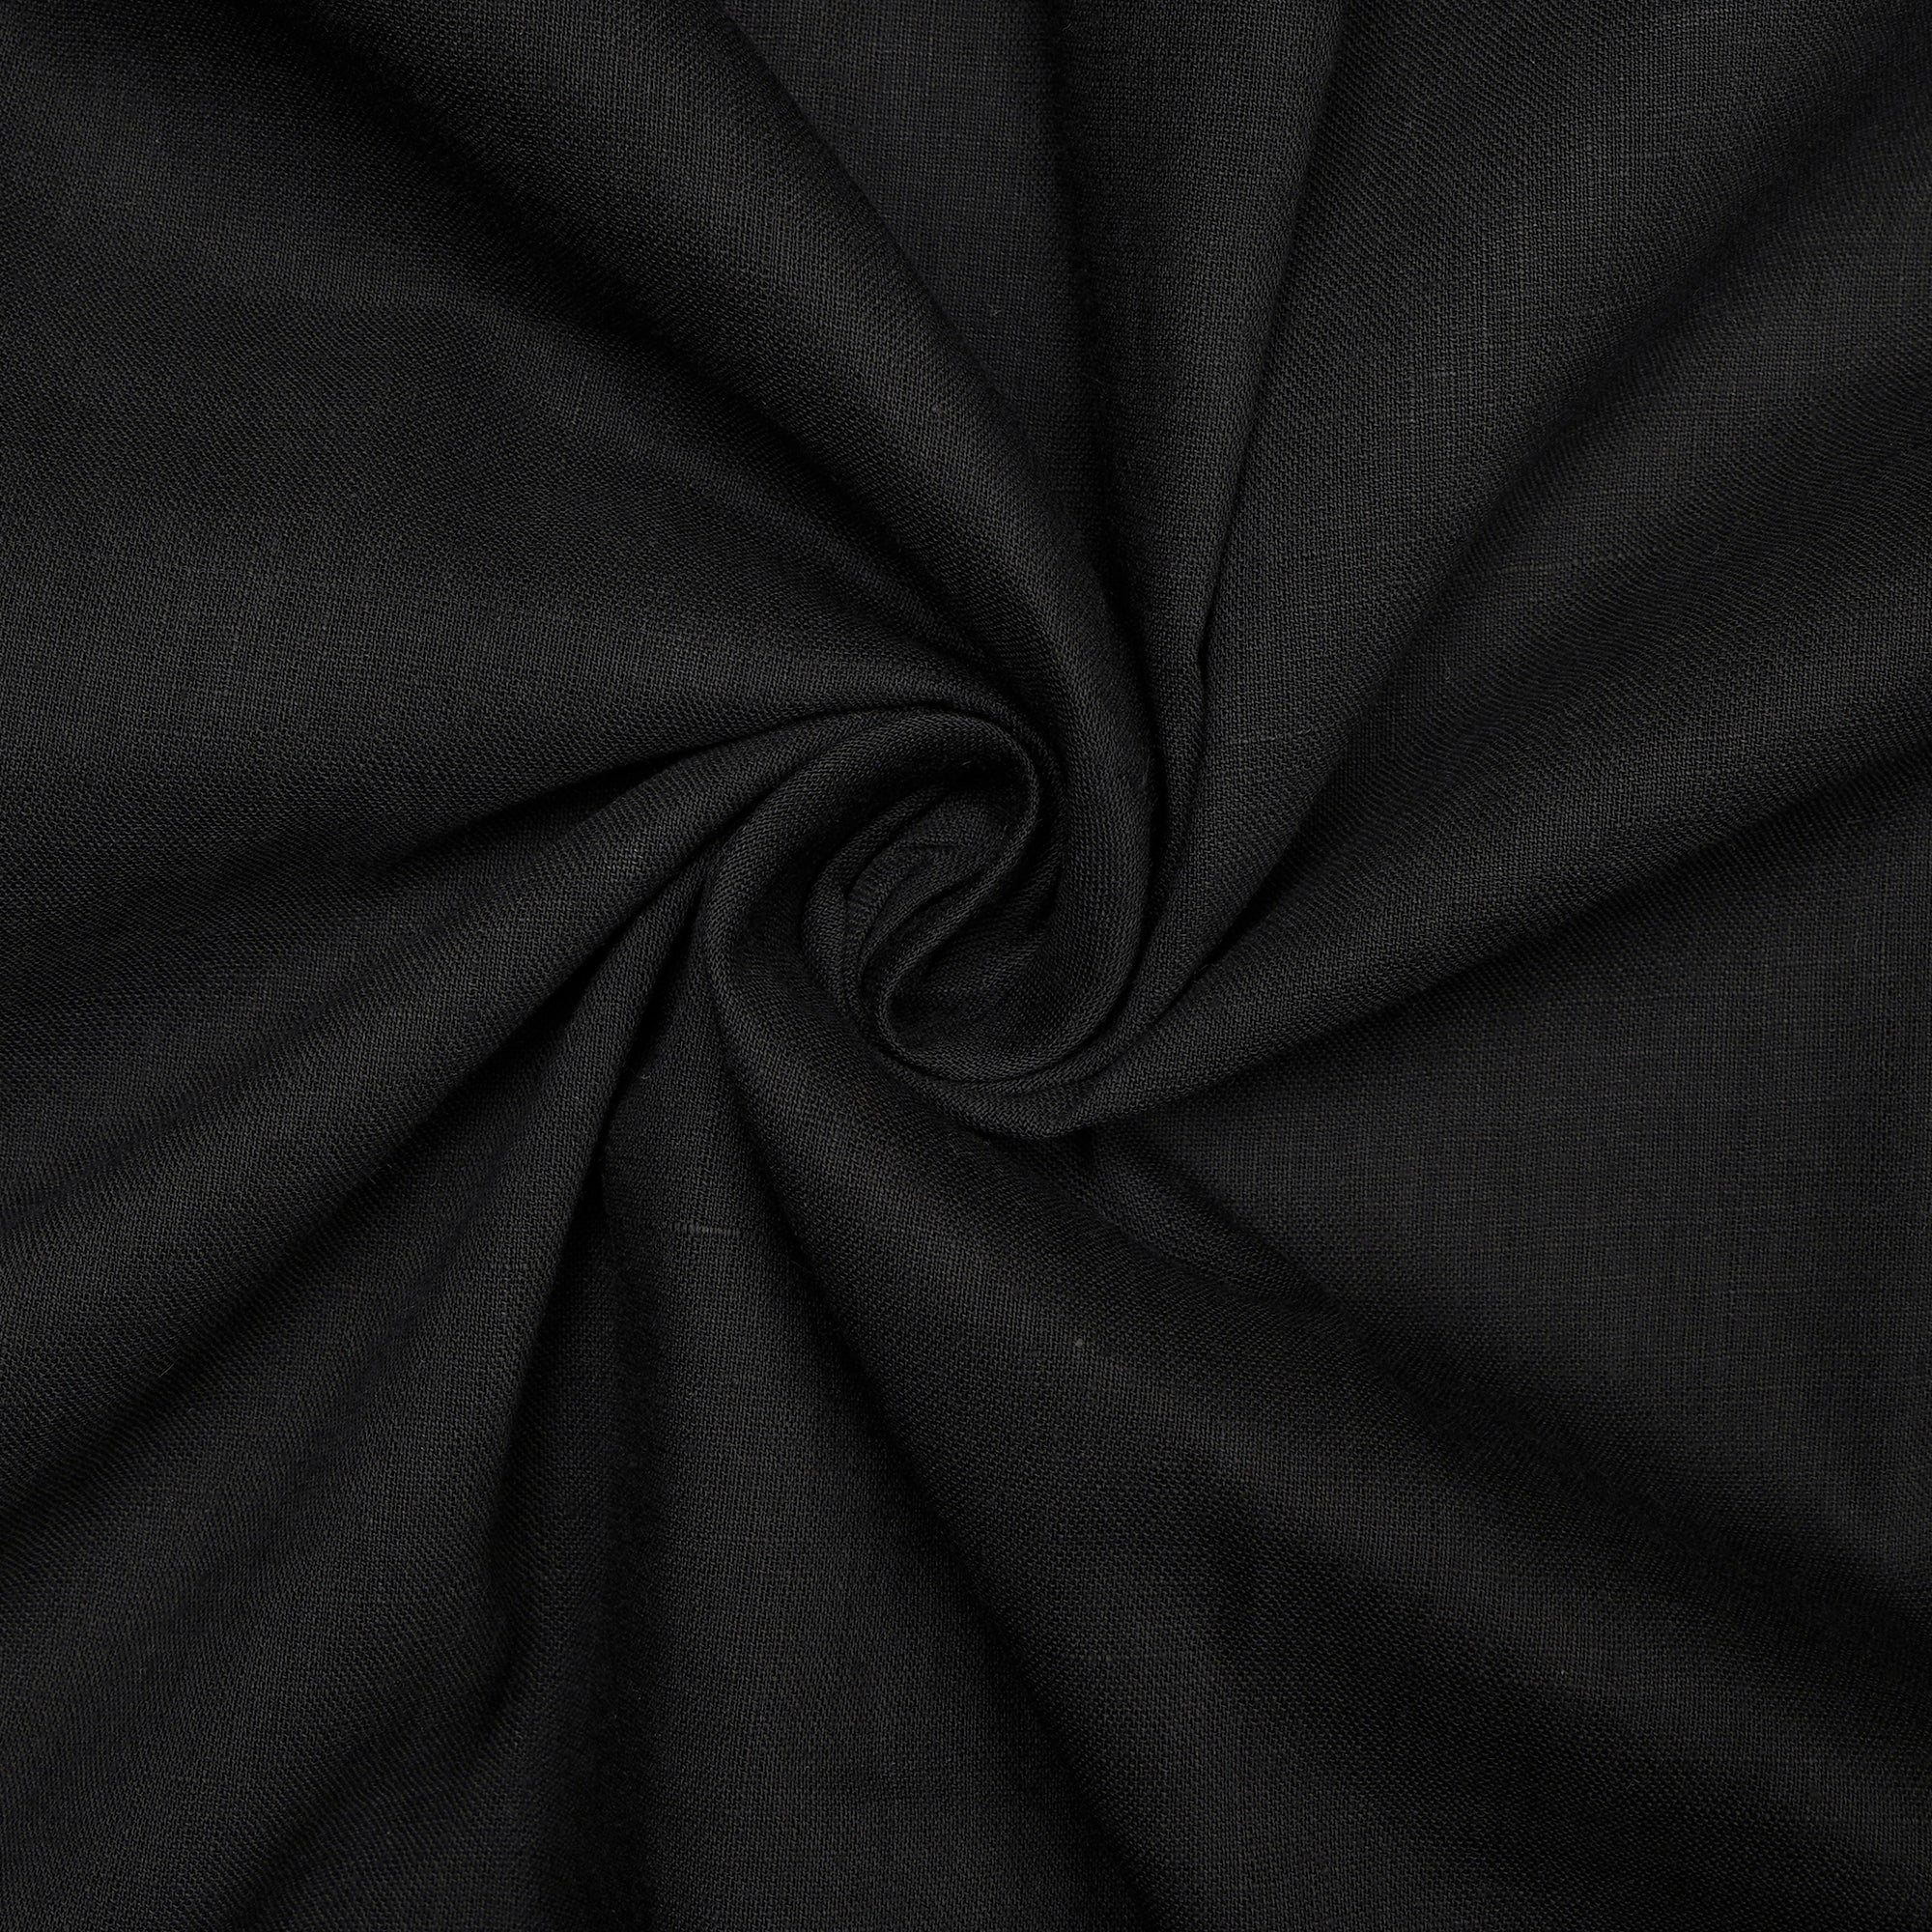 Black Handspun Handwoven Muslin Cotton Fabric